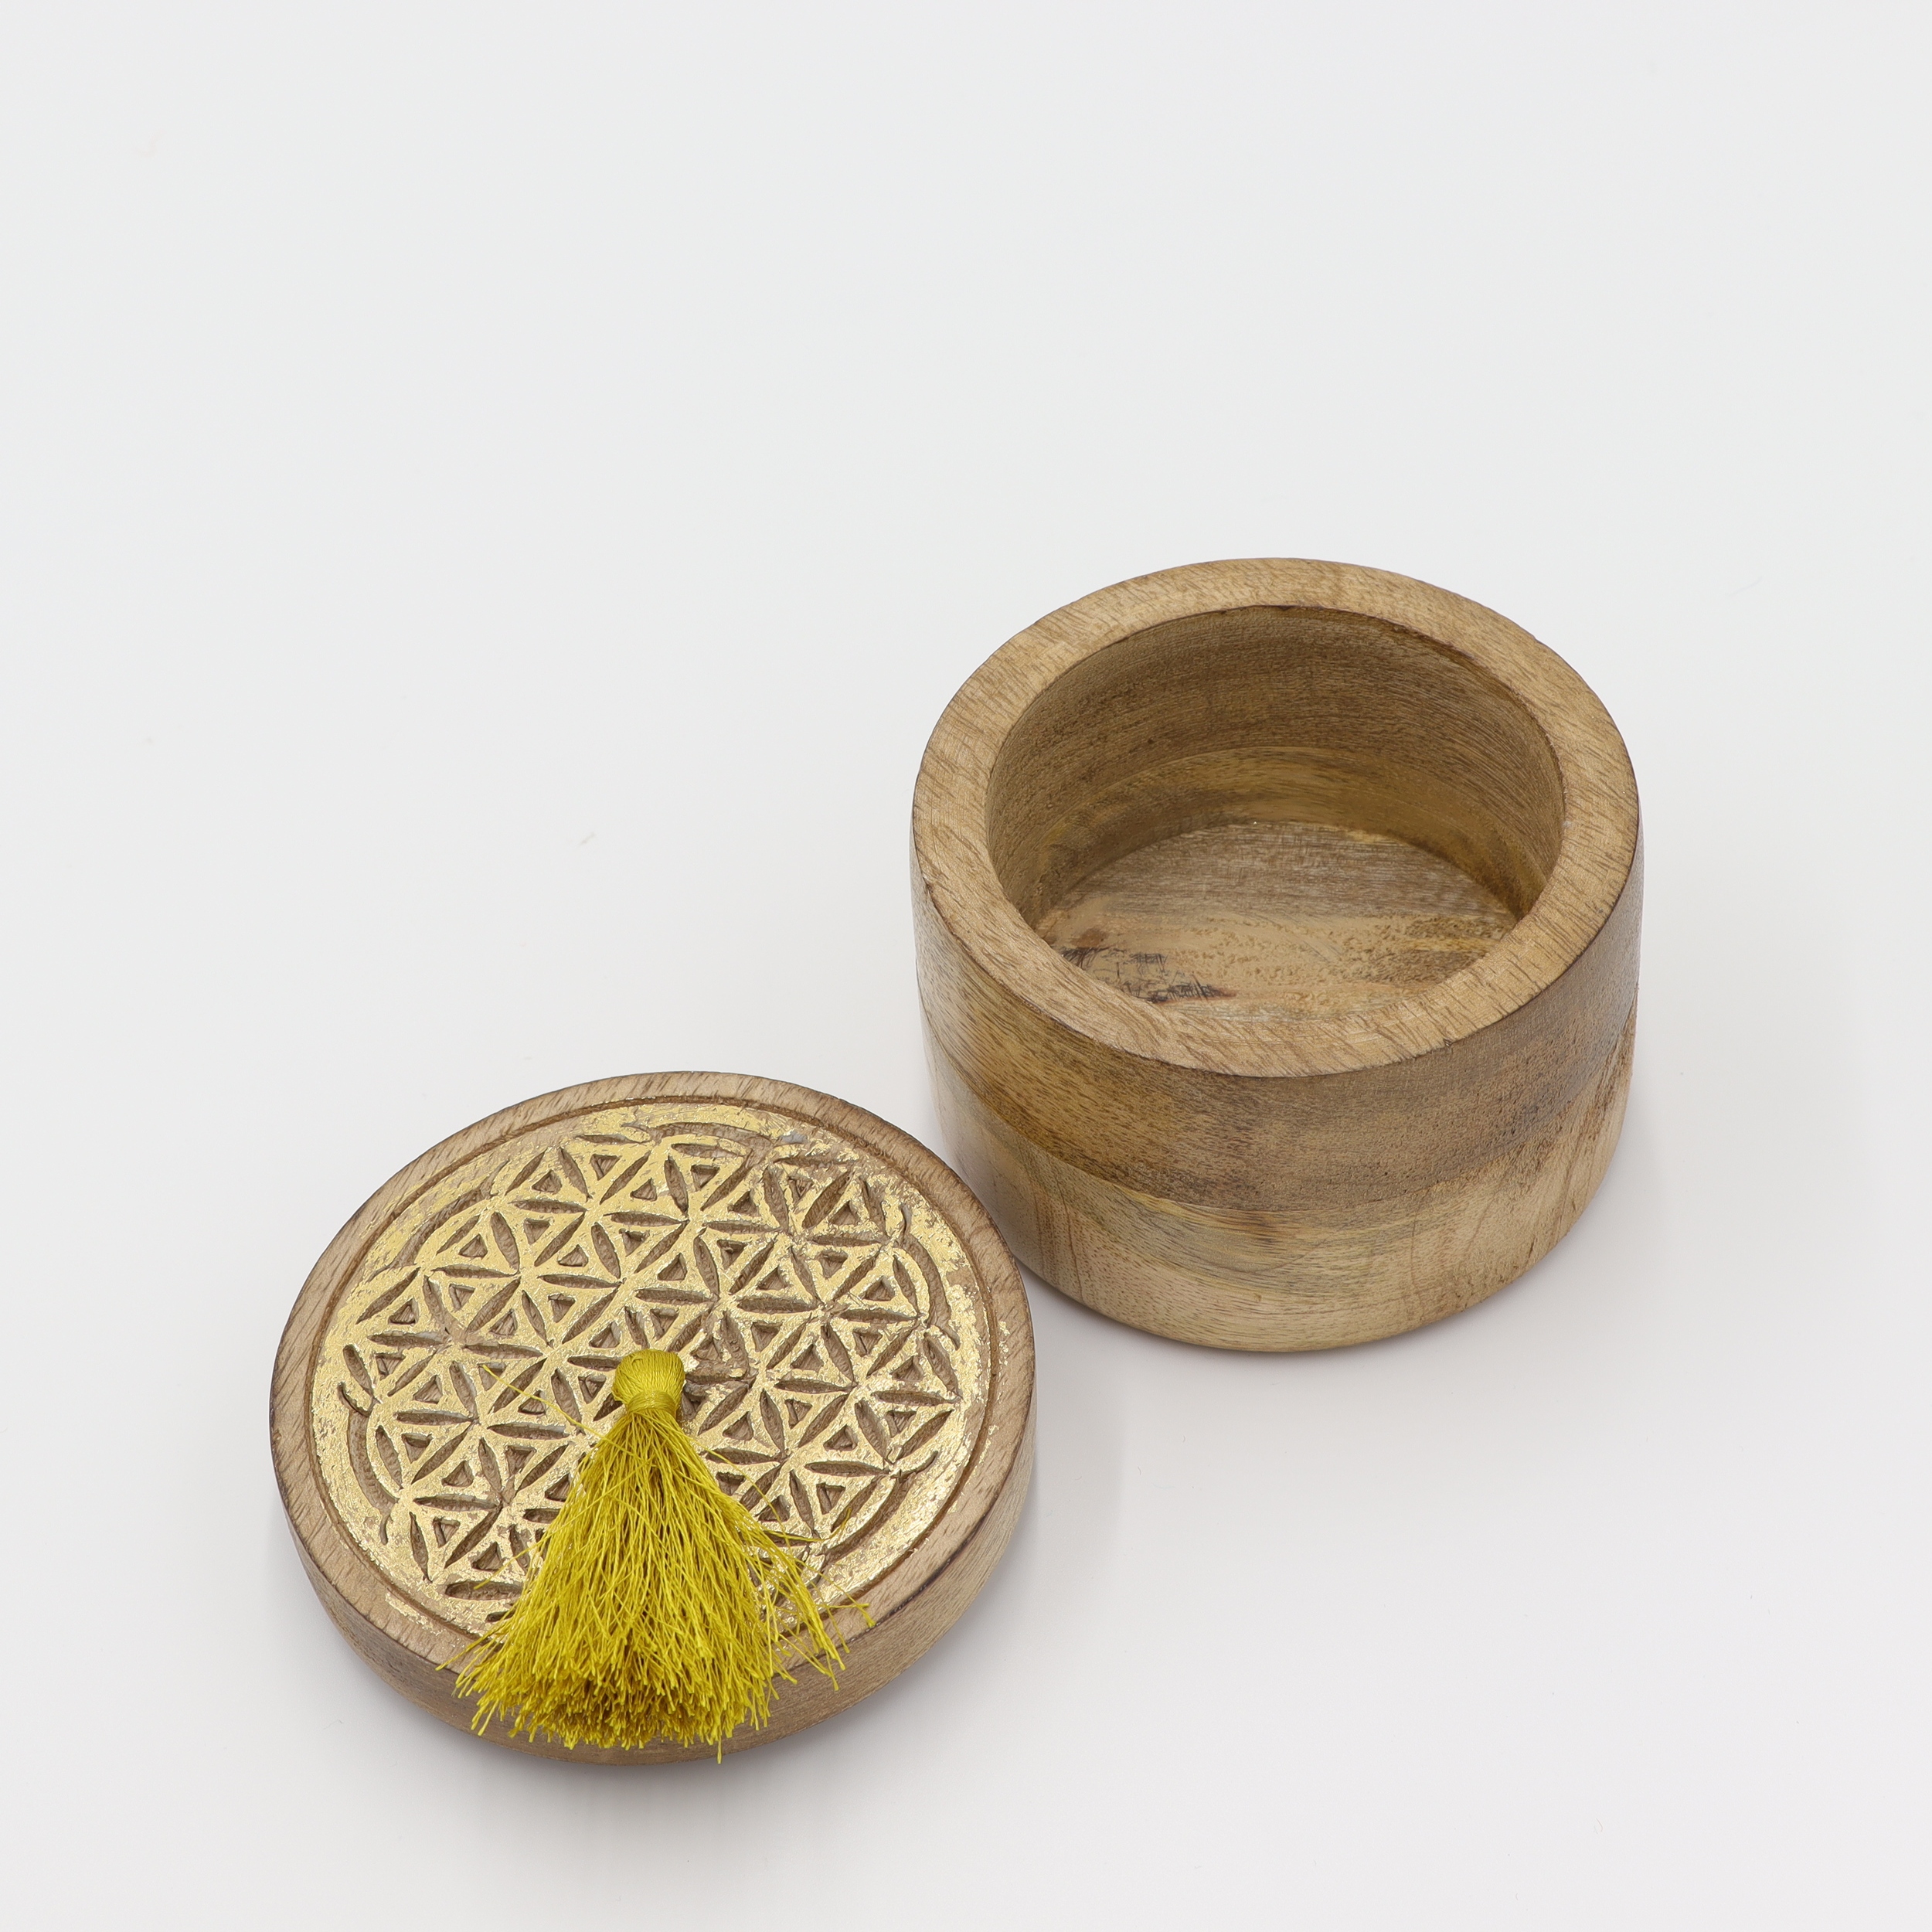 Dose aus Holz - Blume des Lebens - goldfarbene Schnitzerei - runder abnehmbarer Deckel mit gelben Bommel - M